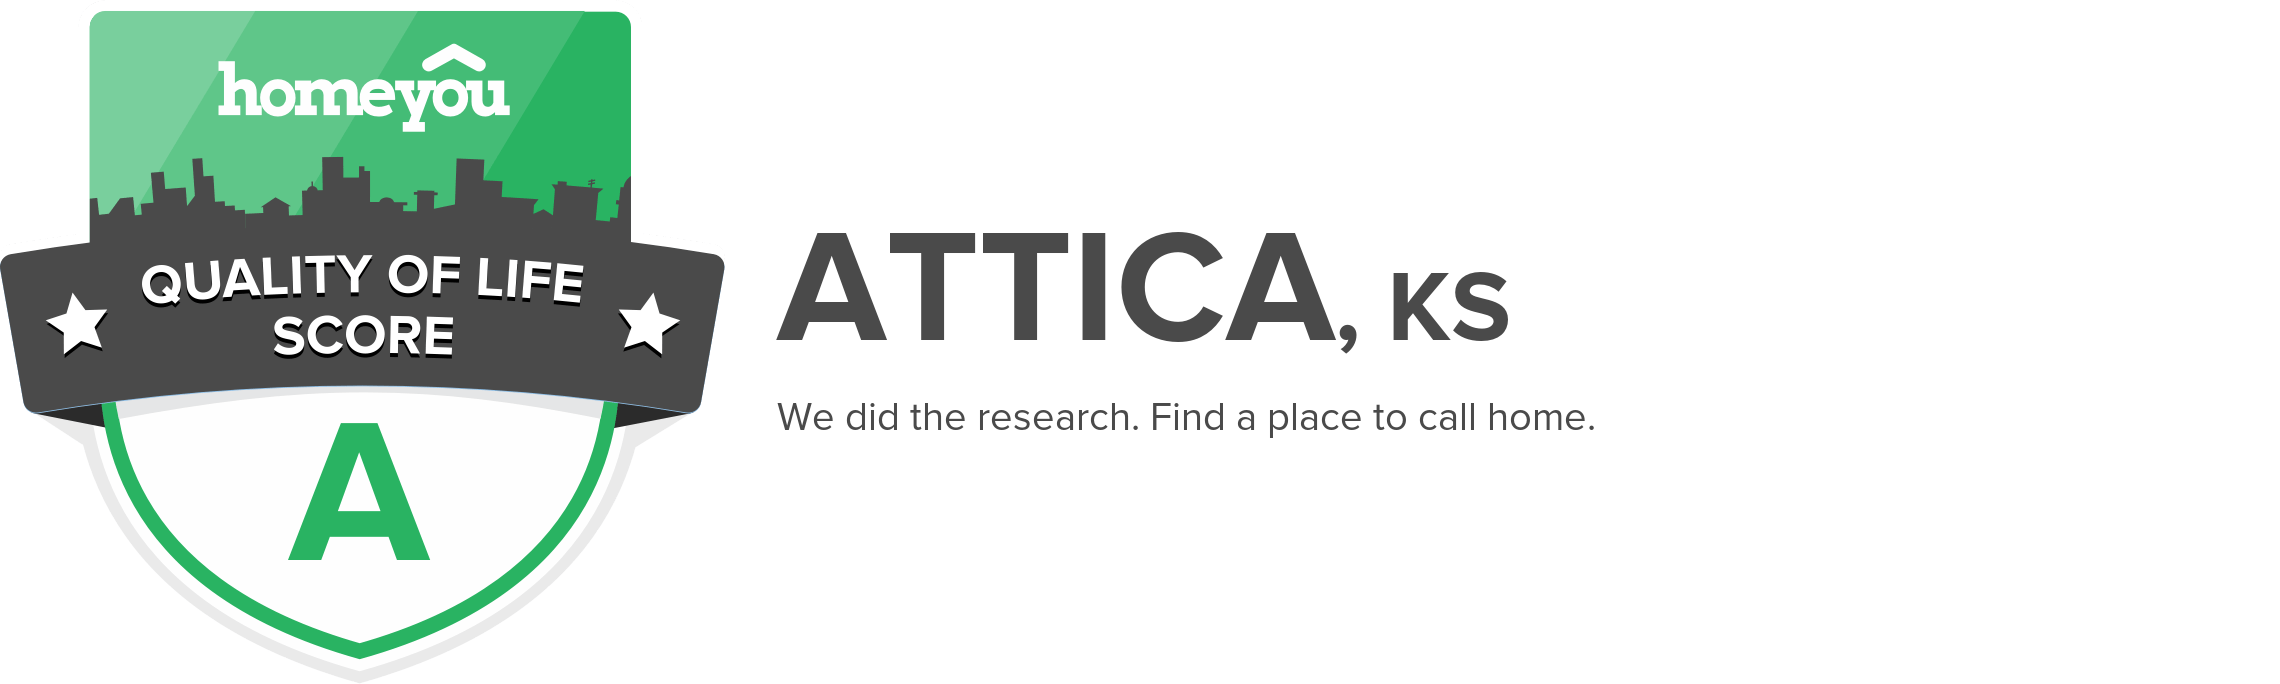 Attica, KS